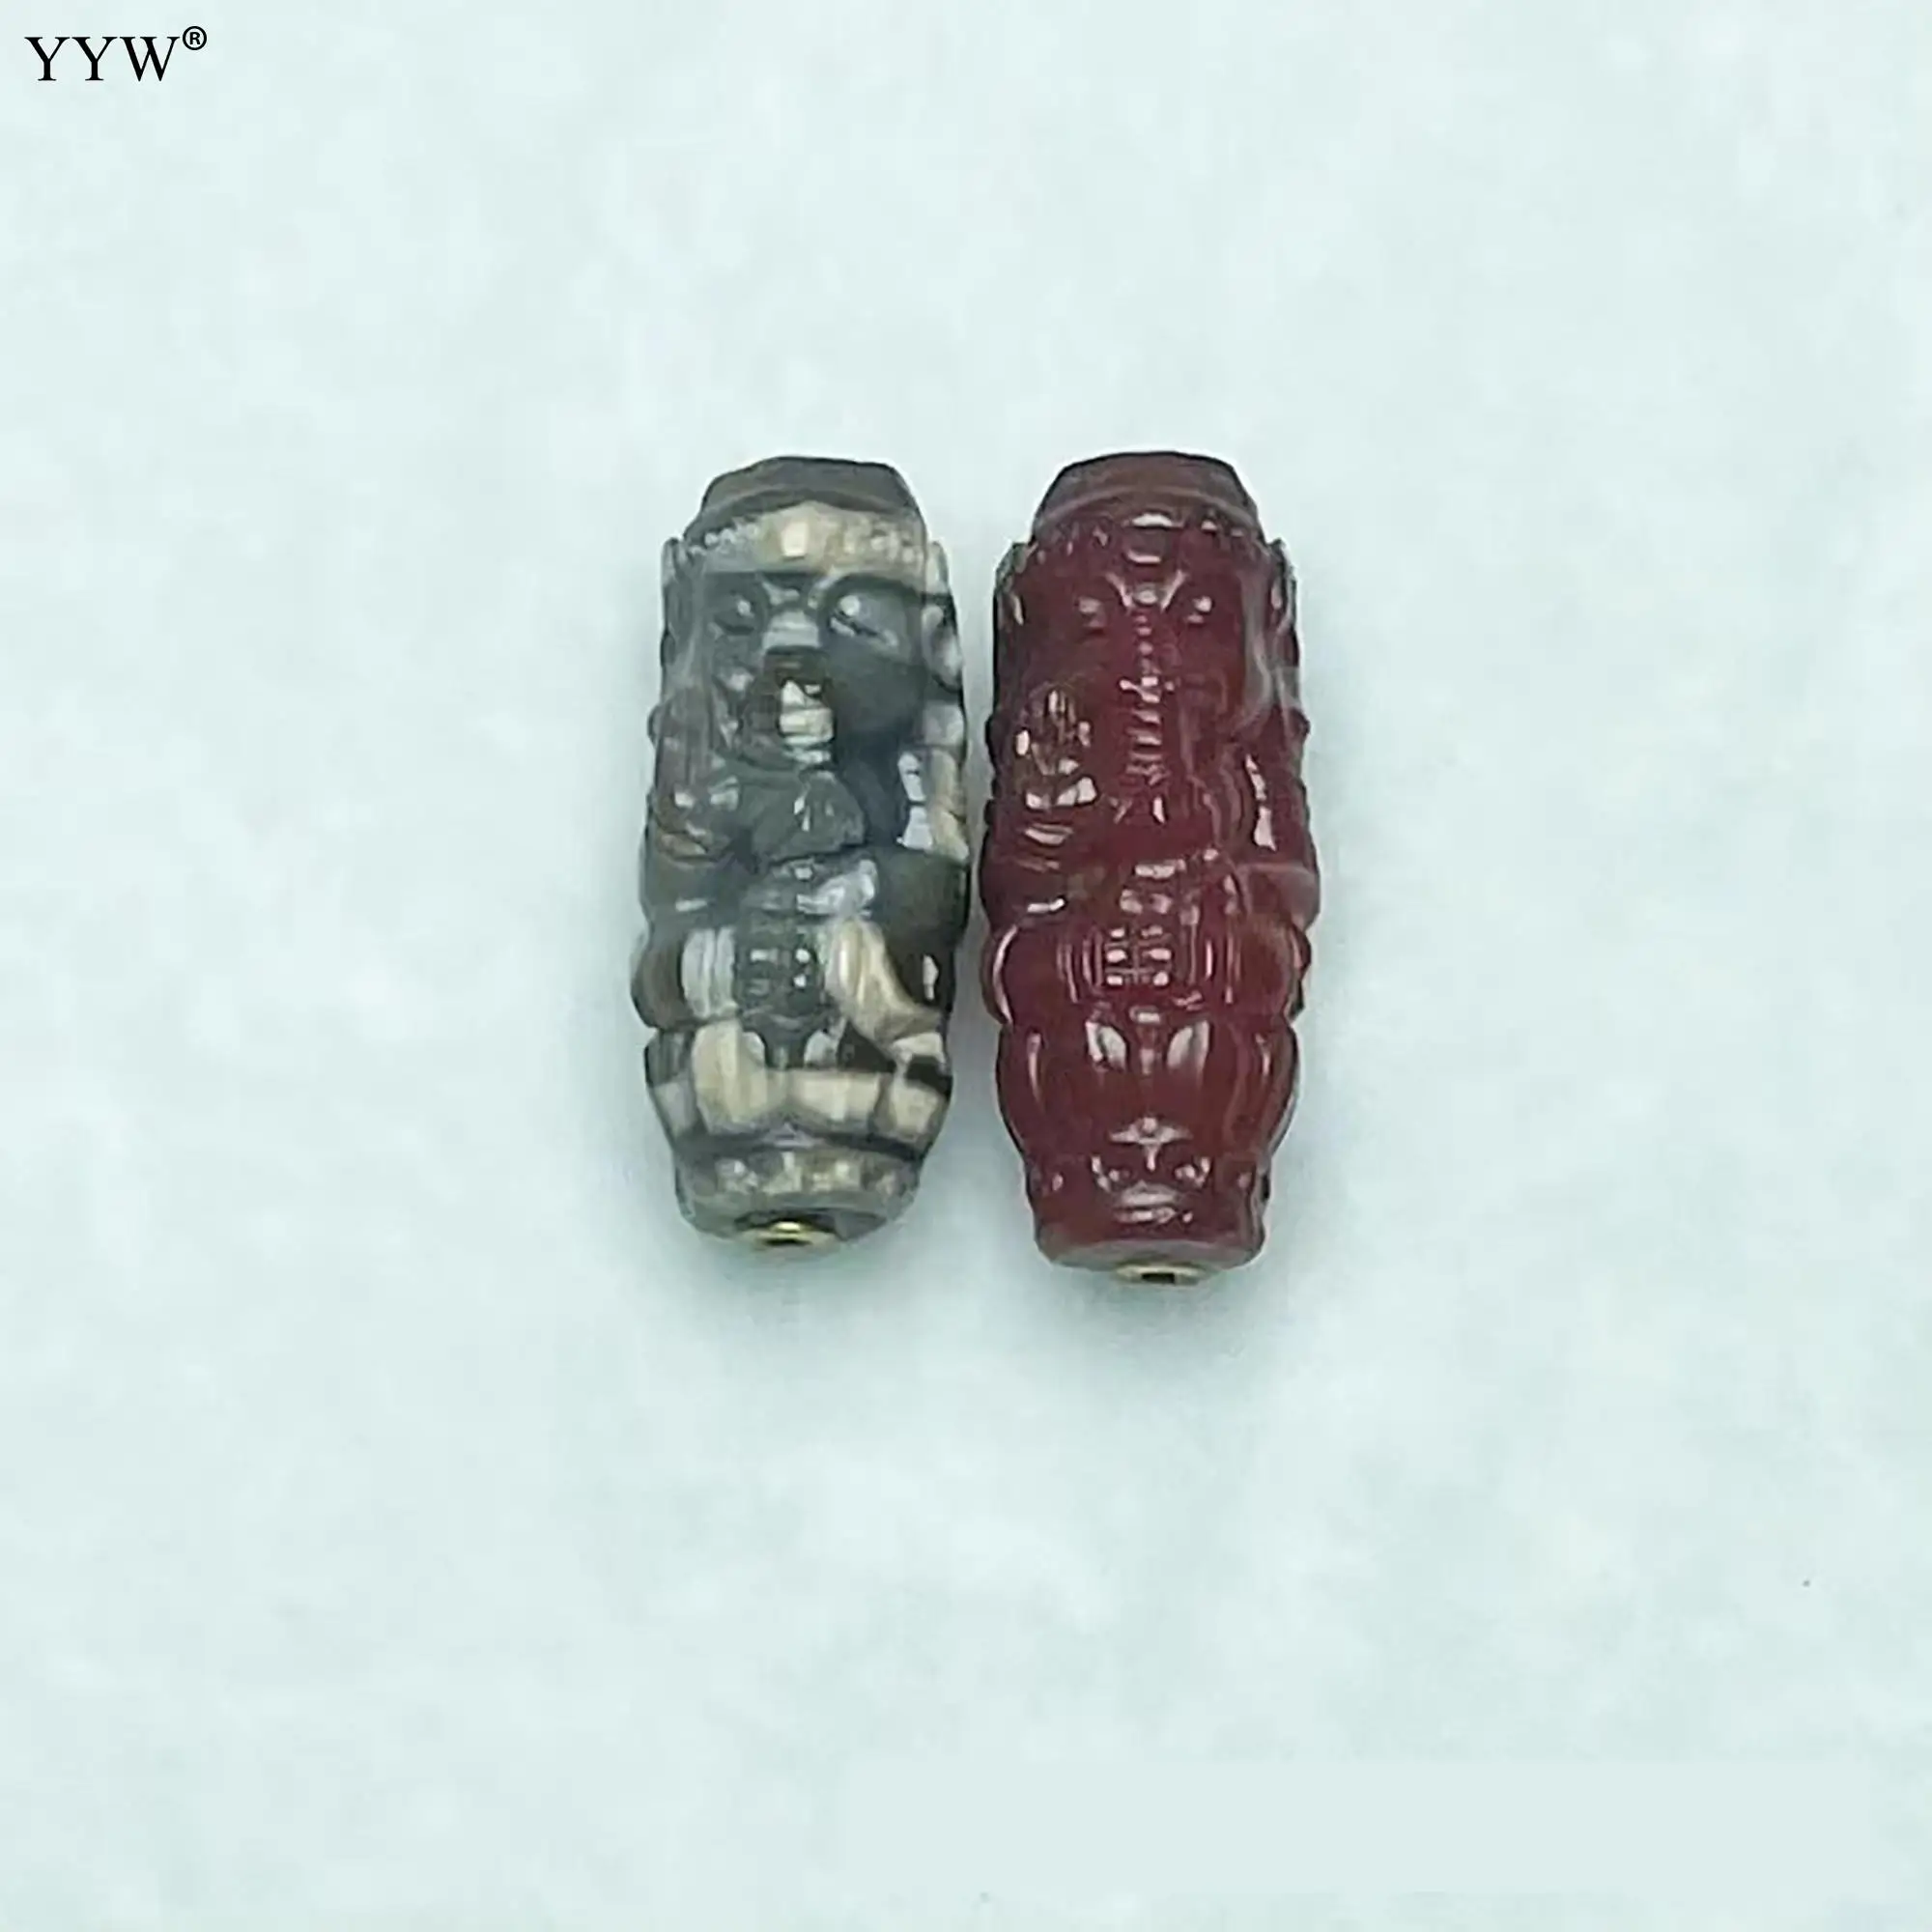 1 ШТ. Высококачественные полированные натуральные тибетские бусины Дзи в форме ведра, резной гравированный буддийский камень 30 мм 40 мм для изготовления браслетов